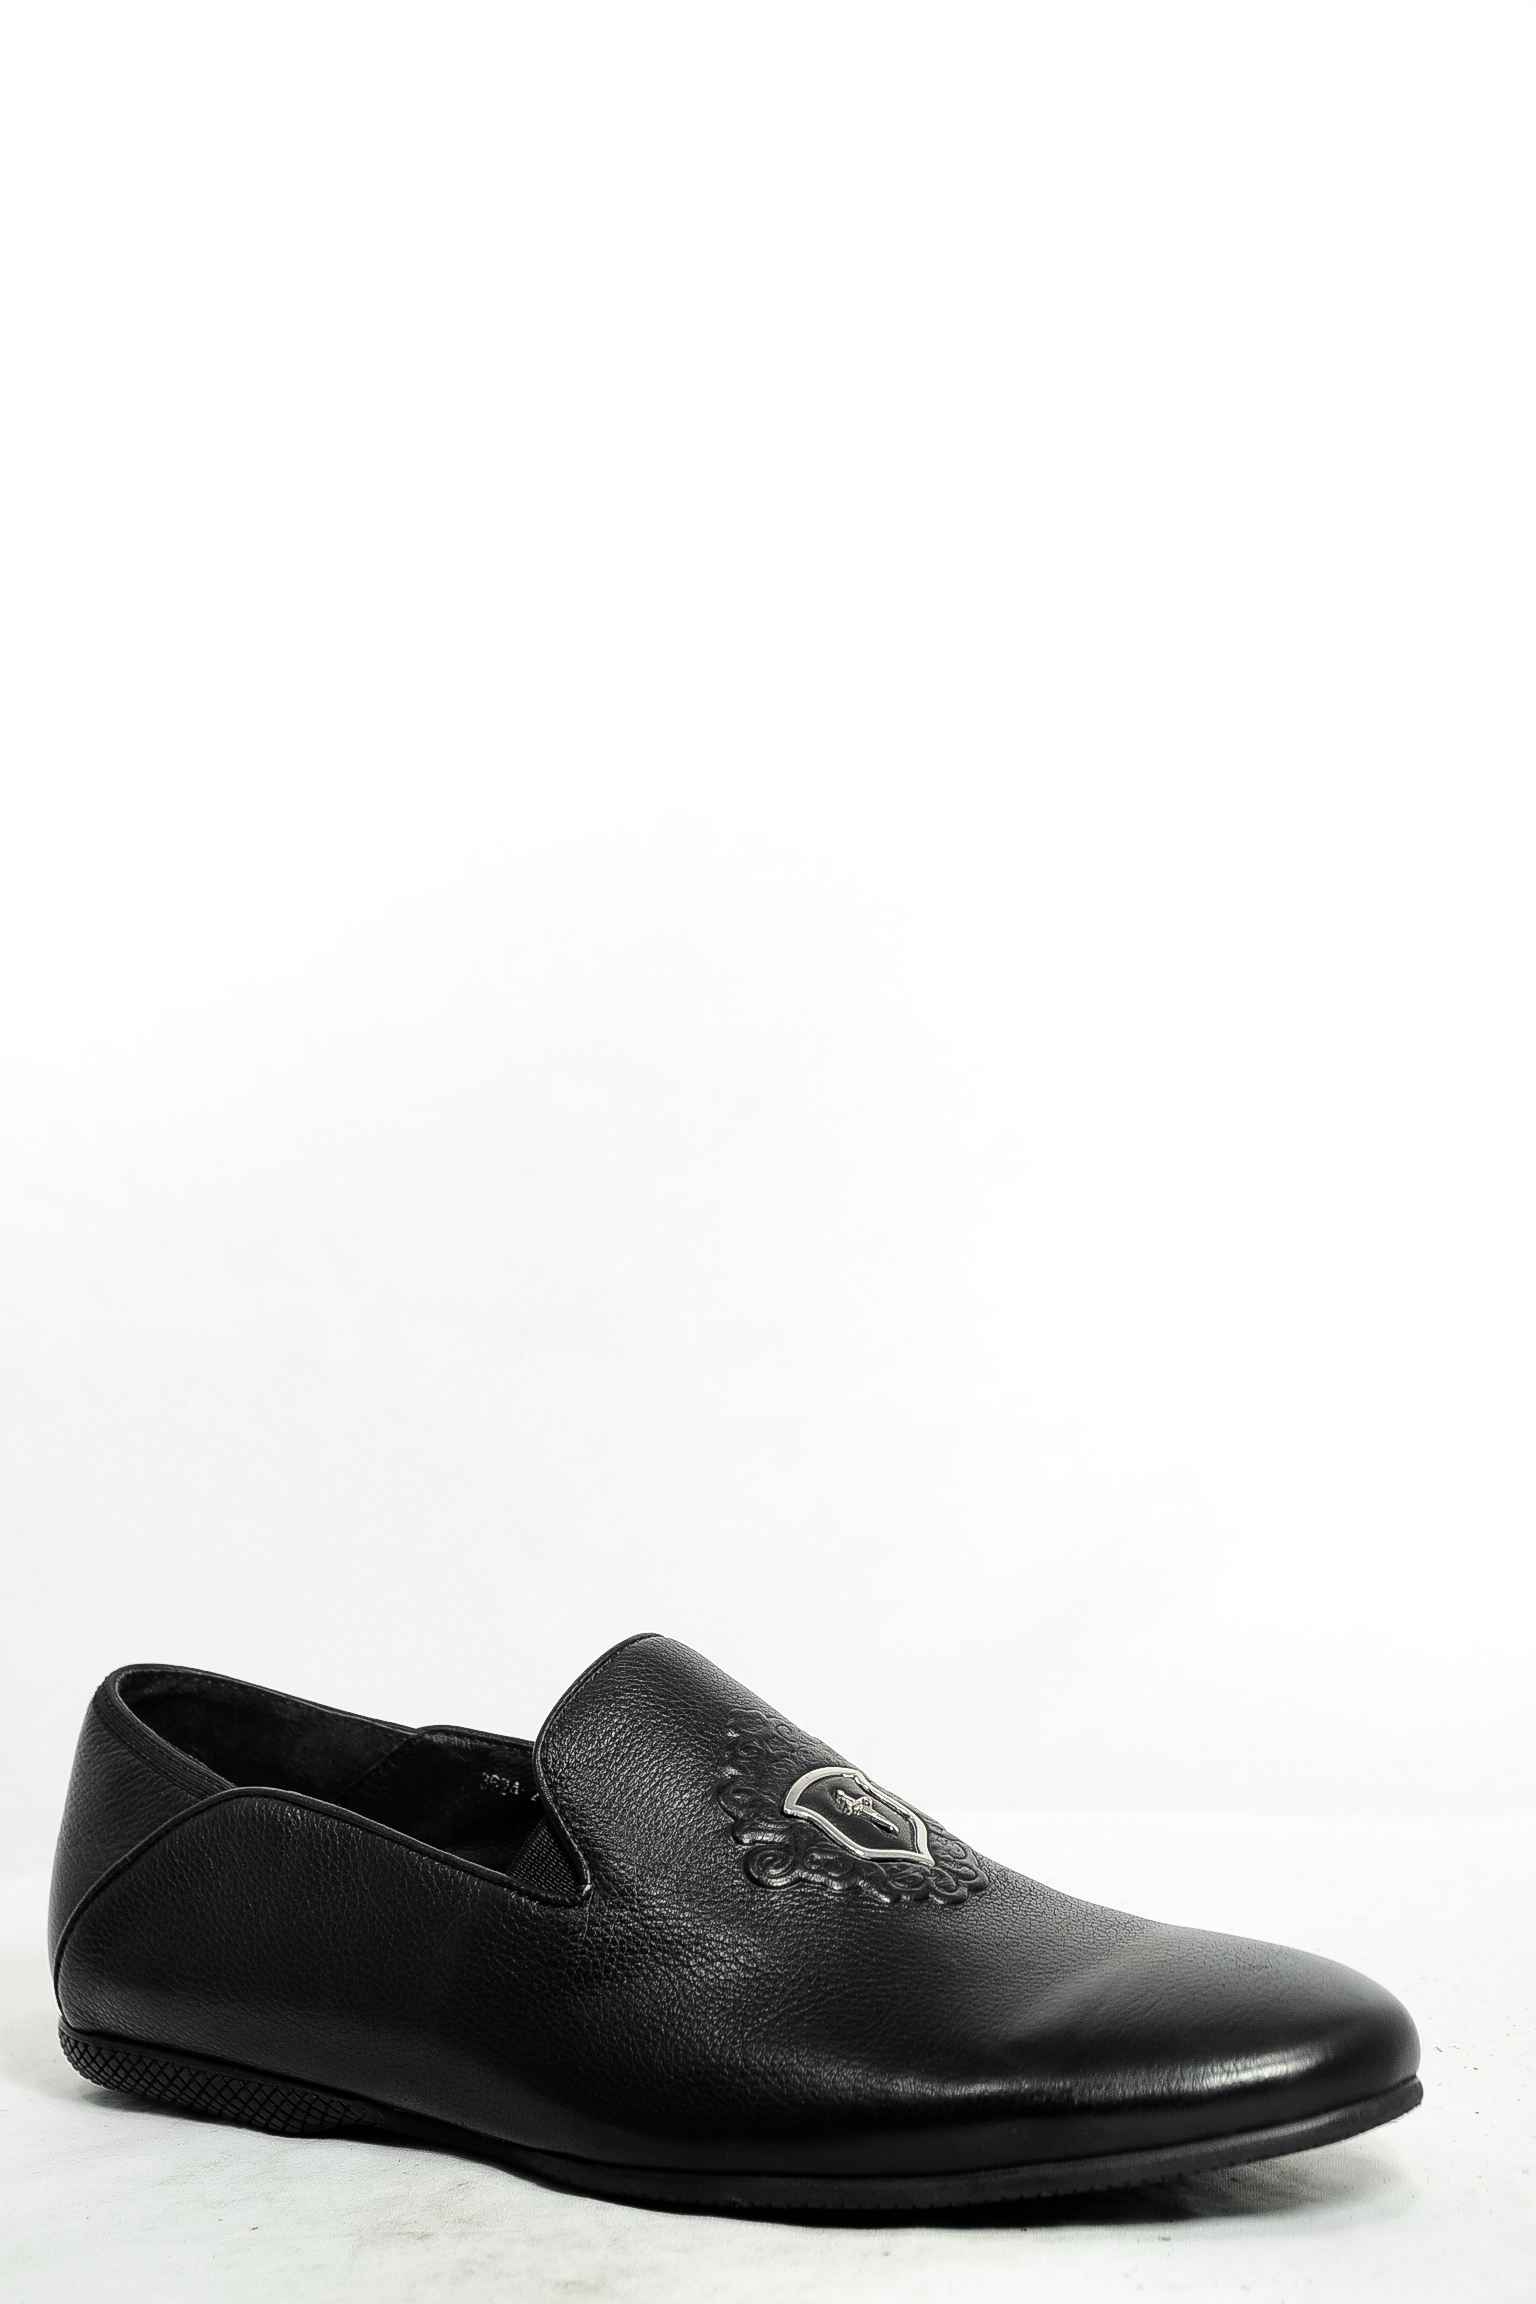 Туфли натуральная кожа Lapostolle LAPOSTOLLE 3624-2N15 цвет черный.